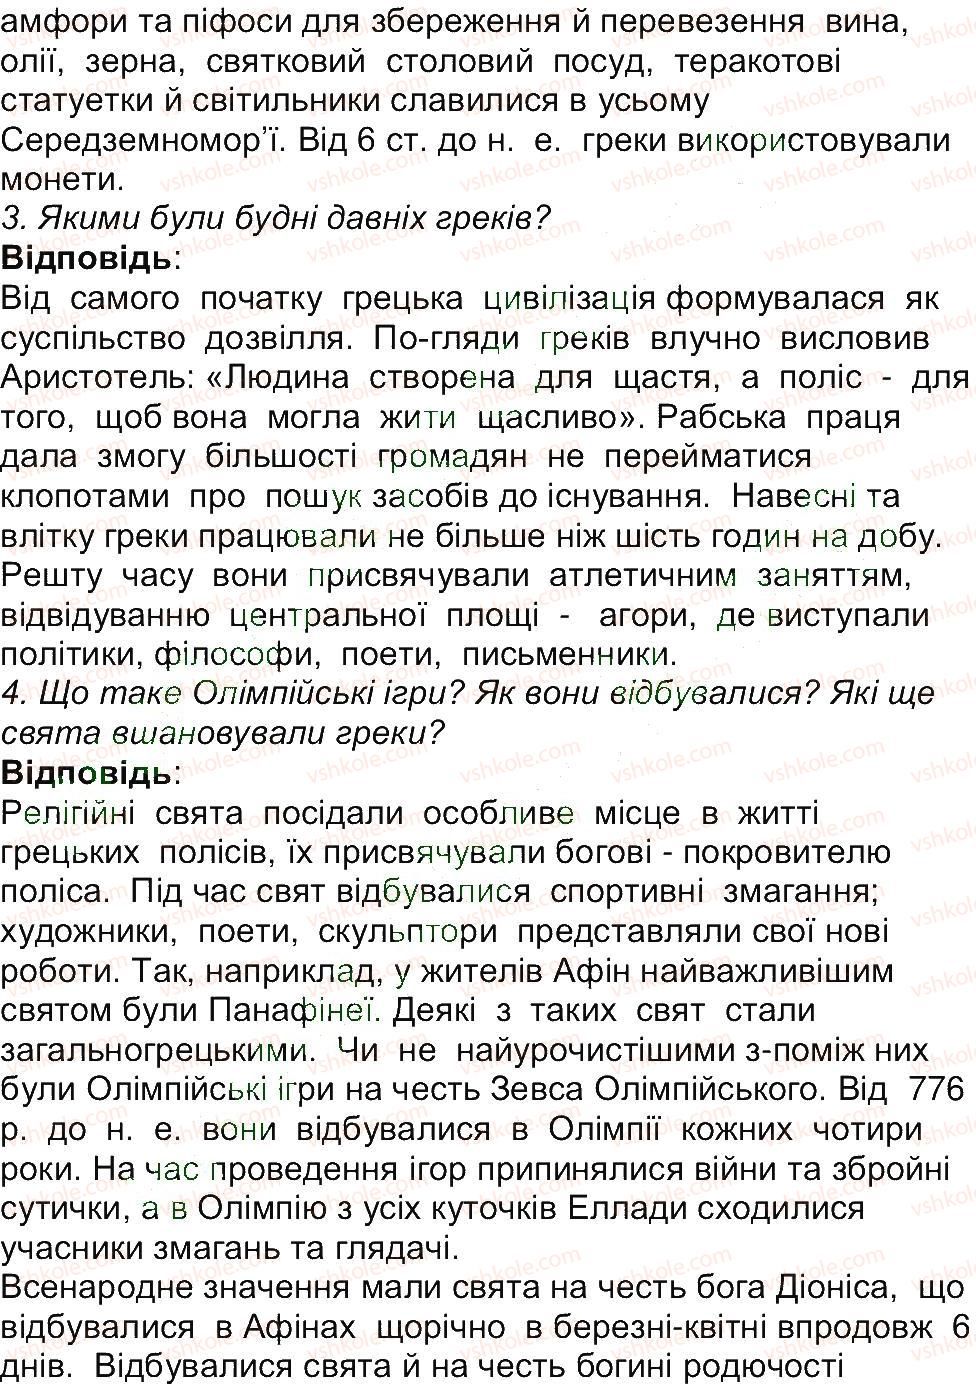 6-istoriya-og-bandrovskij-vs-vlasov-2014--storinki-143200-170-rnd714.jpg